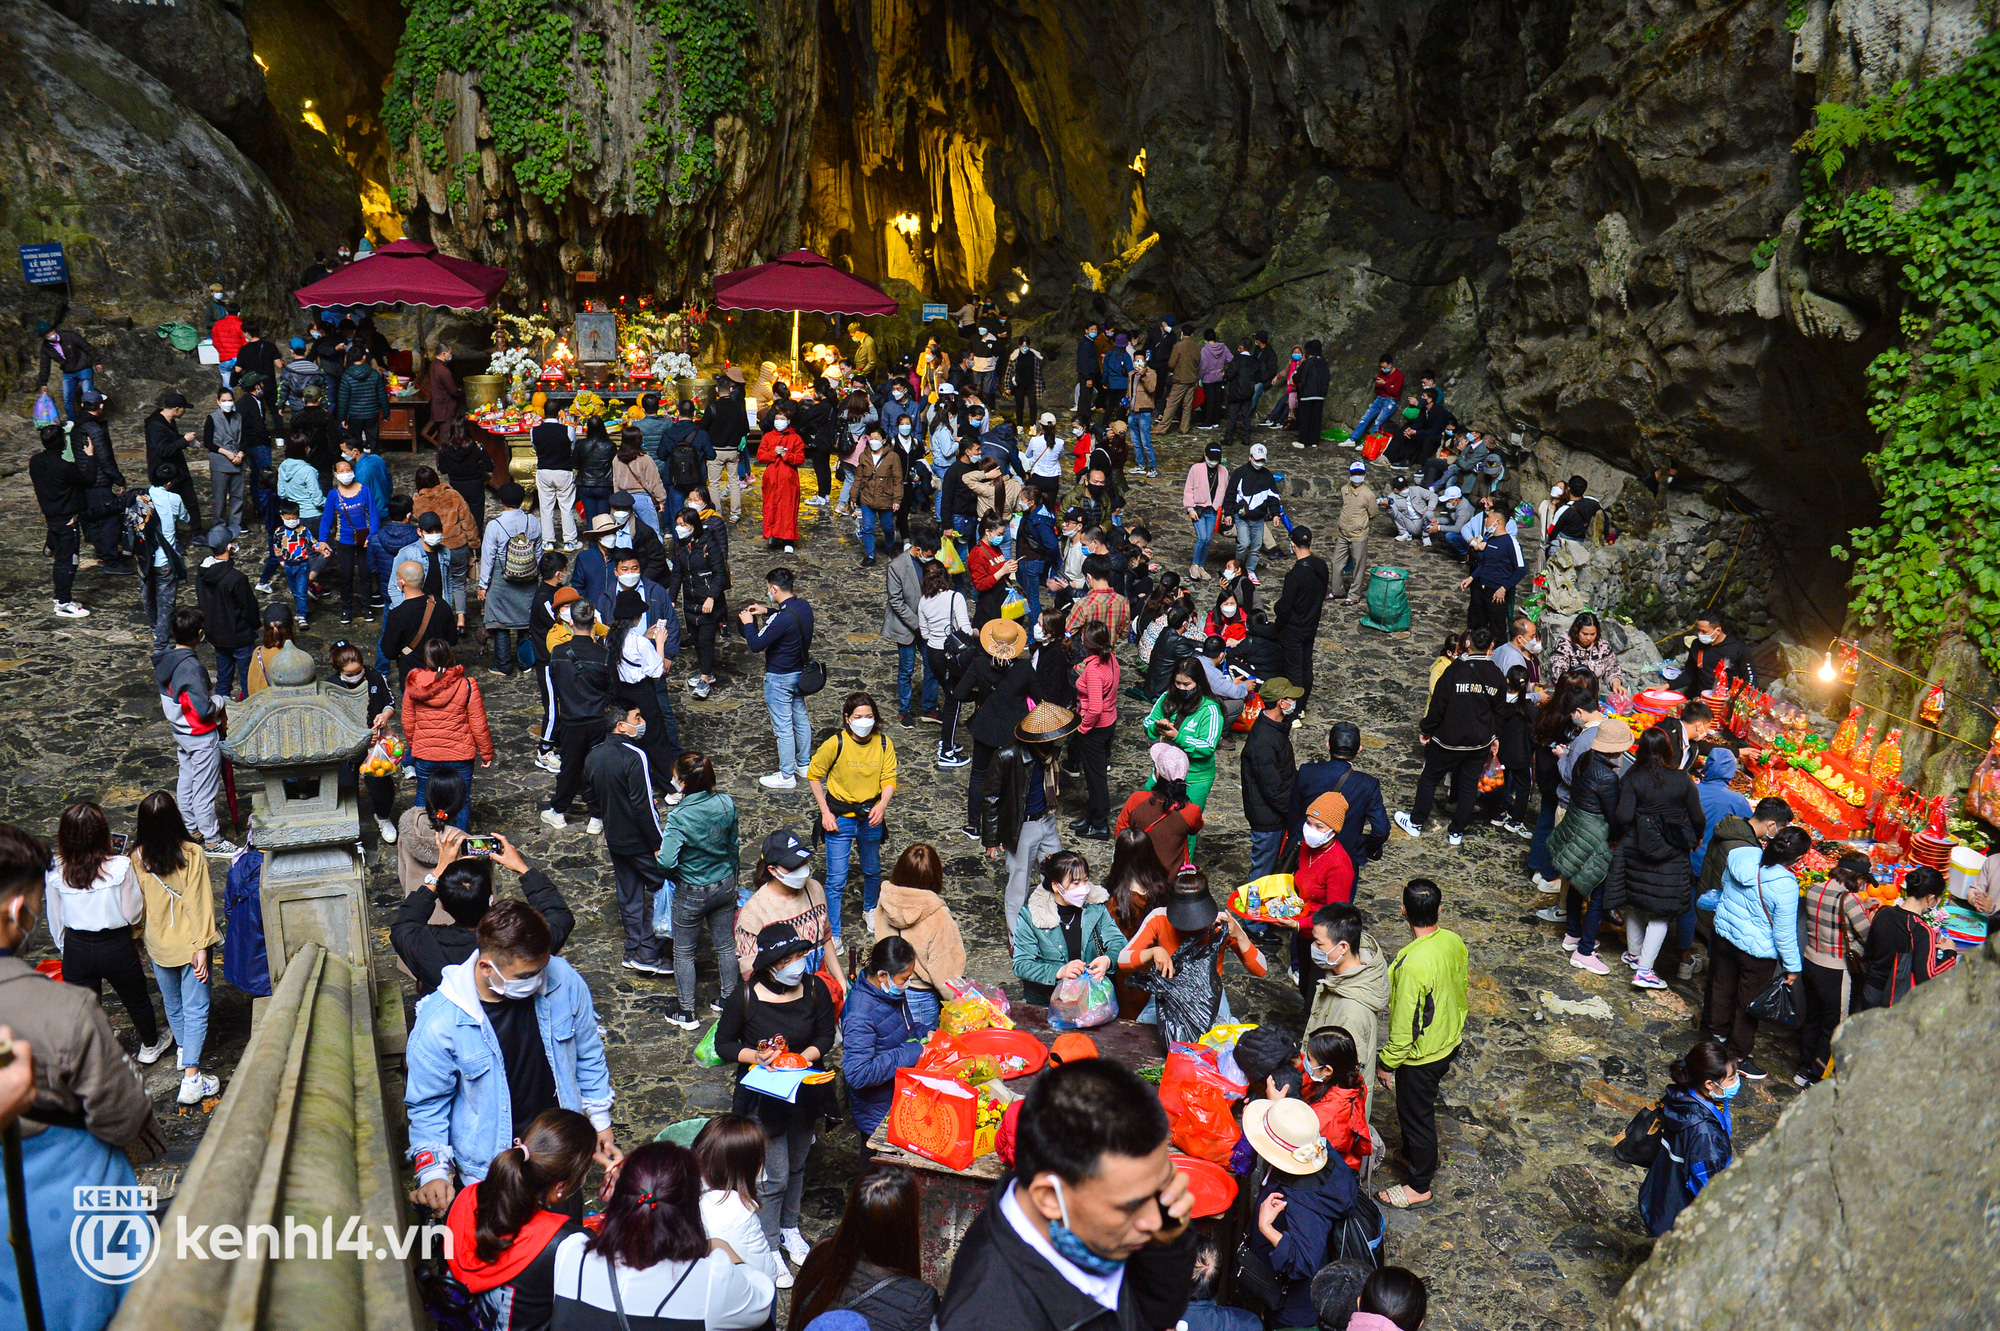 Chùa Hương ngày đầu chính thức mở lại: Hàng nghìn người chen nhau lễ Phật ở động Hương Tích, hứng nước lộc rồi thoa lên mặt - Ảnh 2.